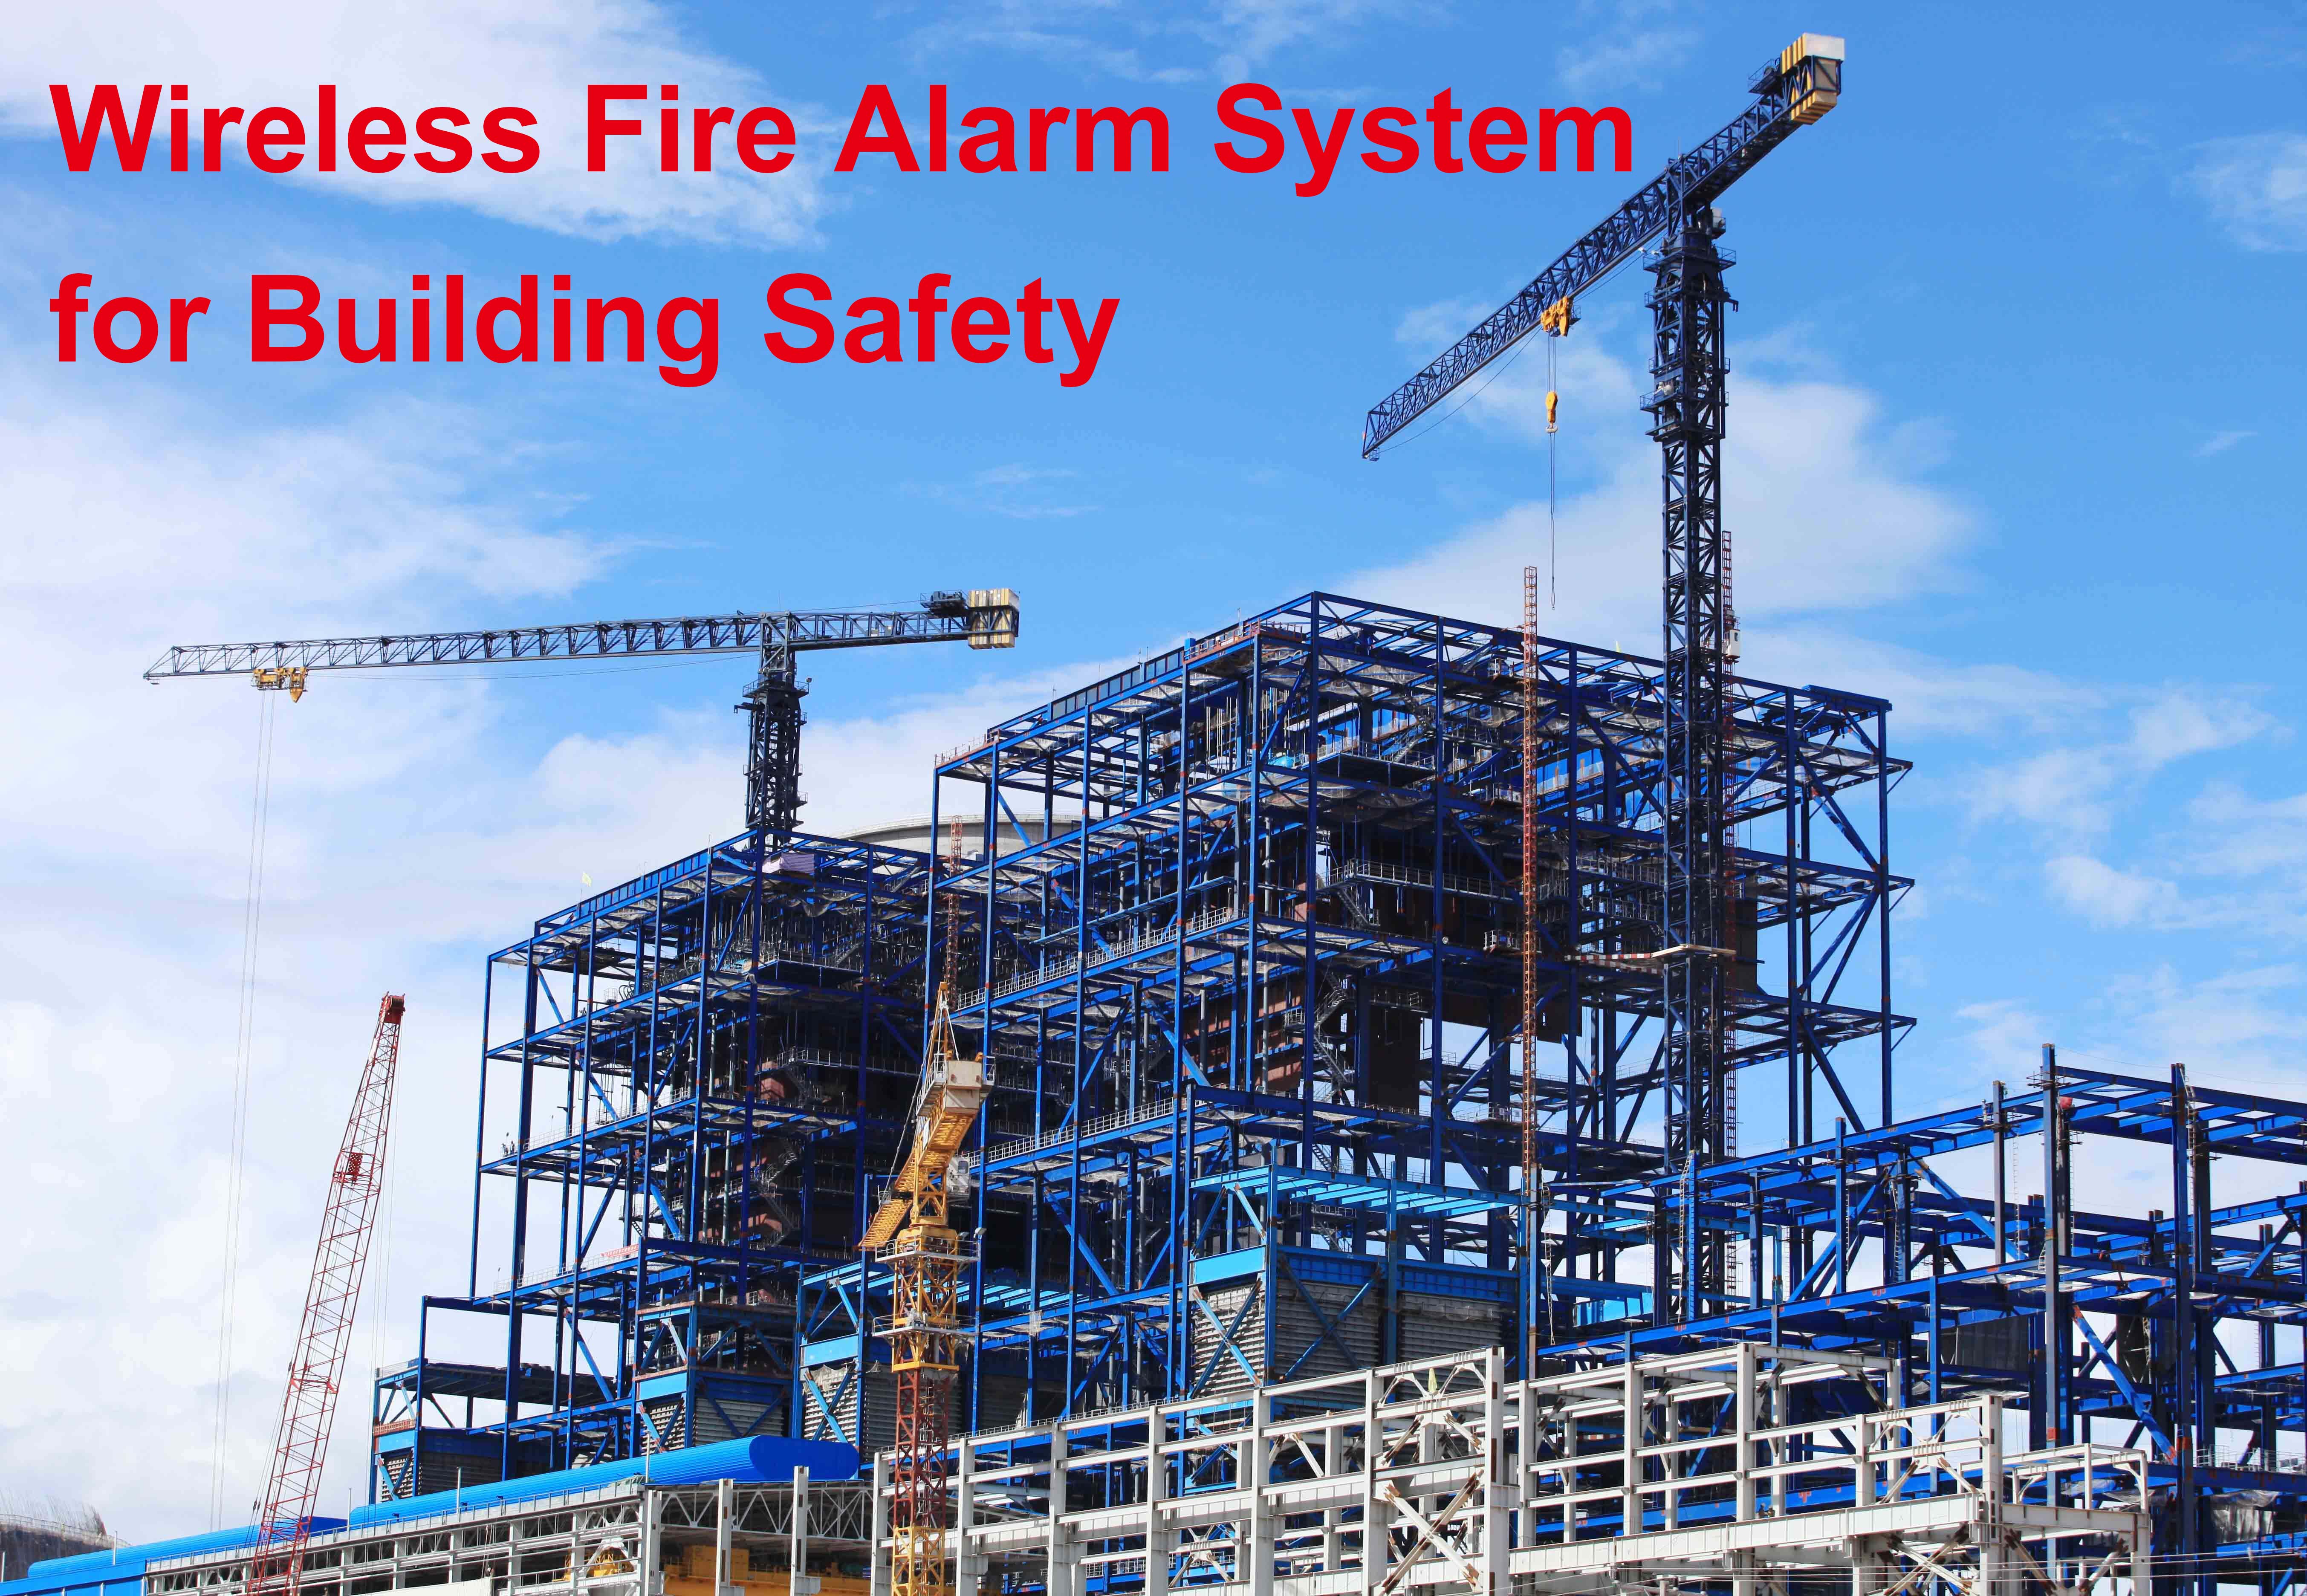 Vorteile des drahtlosen Brandmeldesystems für die Gebäudesicherheit